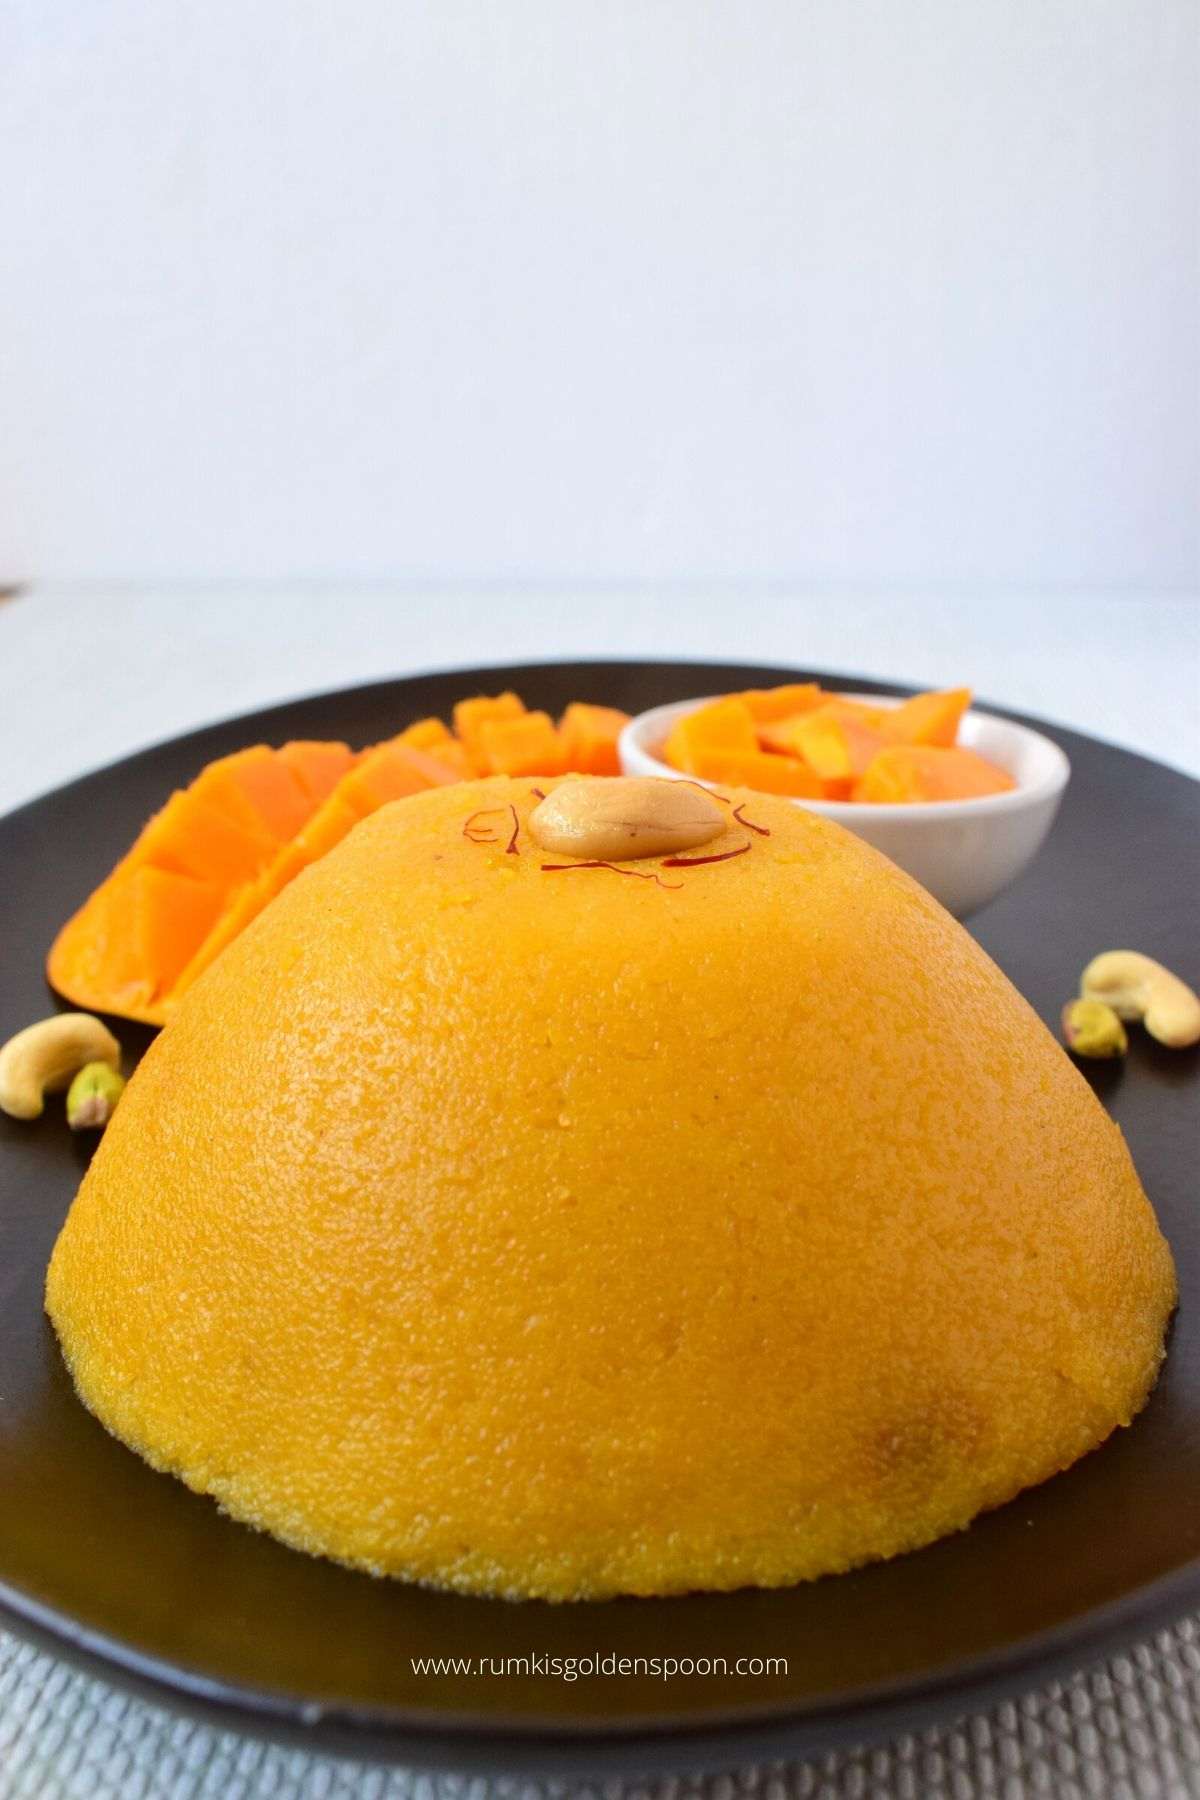 mango sheera, mango halwa, mango sheera recipe, mango kesari, mango halwa recipe, mango kesari recipe, how to make mango halwa, how to make mango sheera, mango sooji halwa recipe, mango rava kesari recipe, mango sooji halwa, how to make mango kesari, mango ka halwa, how to prepare mango halwa, mango kesari halwa, mango rava kesari , mango kesari halwa recipe, mango dessert, mango dessert recipes, mango dessert recipe, mango recipes dessert, Indian mango dessert recipes, Indian dessert recipes with mango, Indian dessert with mango, indian sweet recipes, Rumki's Golden Spoon